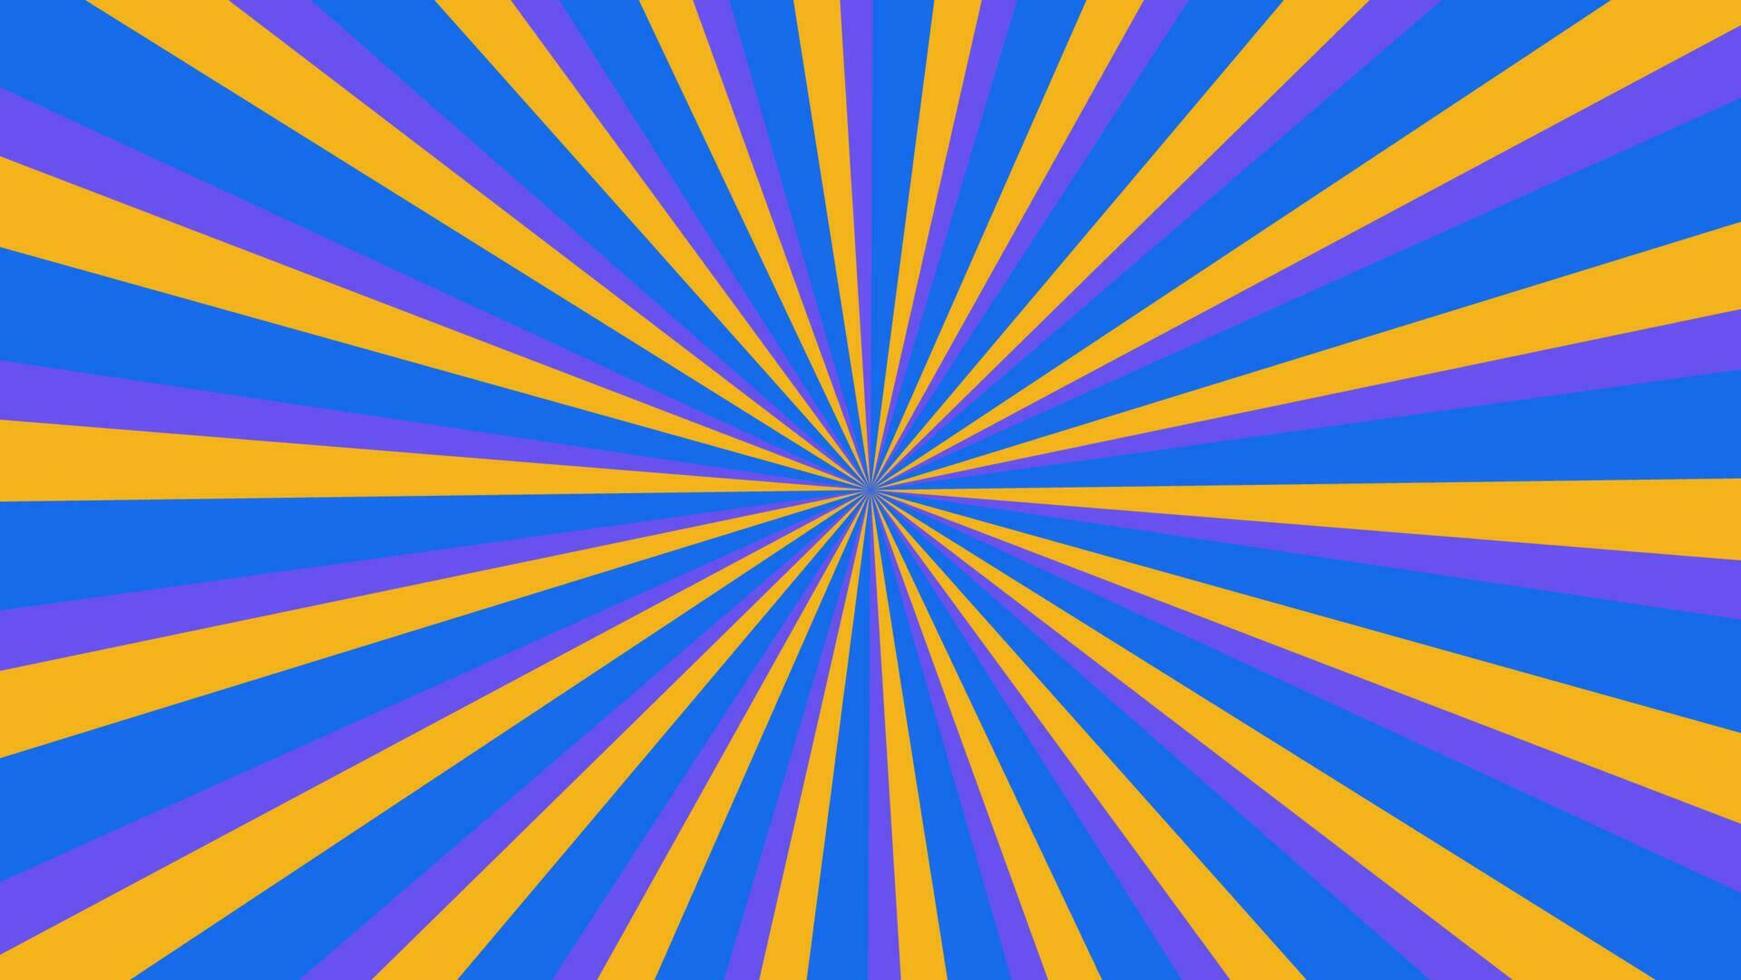 abstrato azul sunburst padrão de fundo para elemento de design gráfico moderno. desenho de raio brilhante com colorido para papel de parede de banner de site e decoração de cartão de pôster vetor